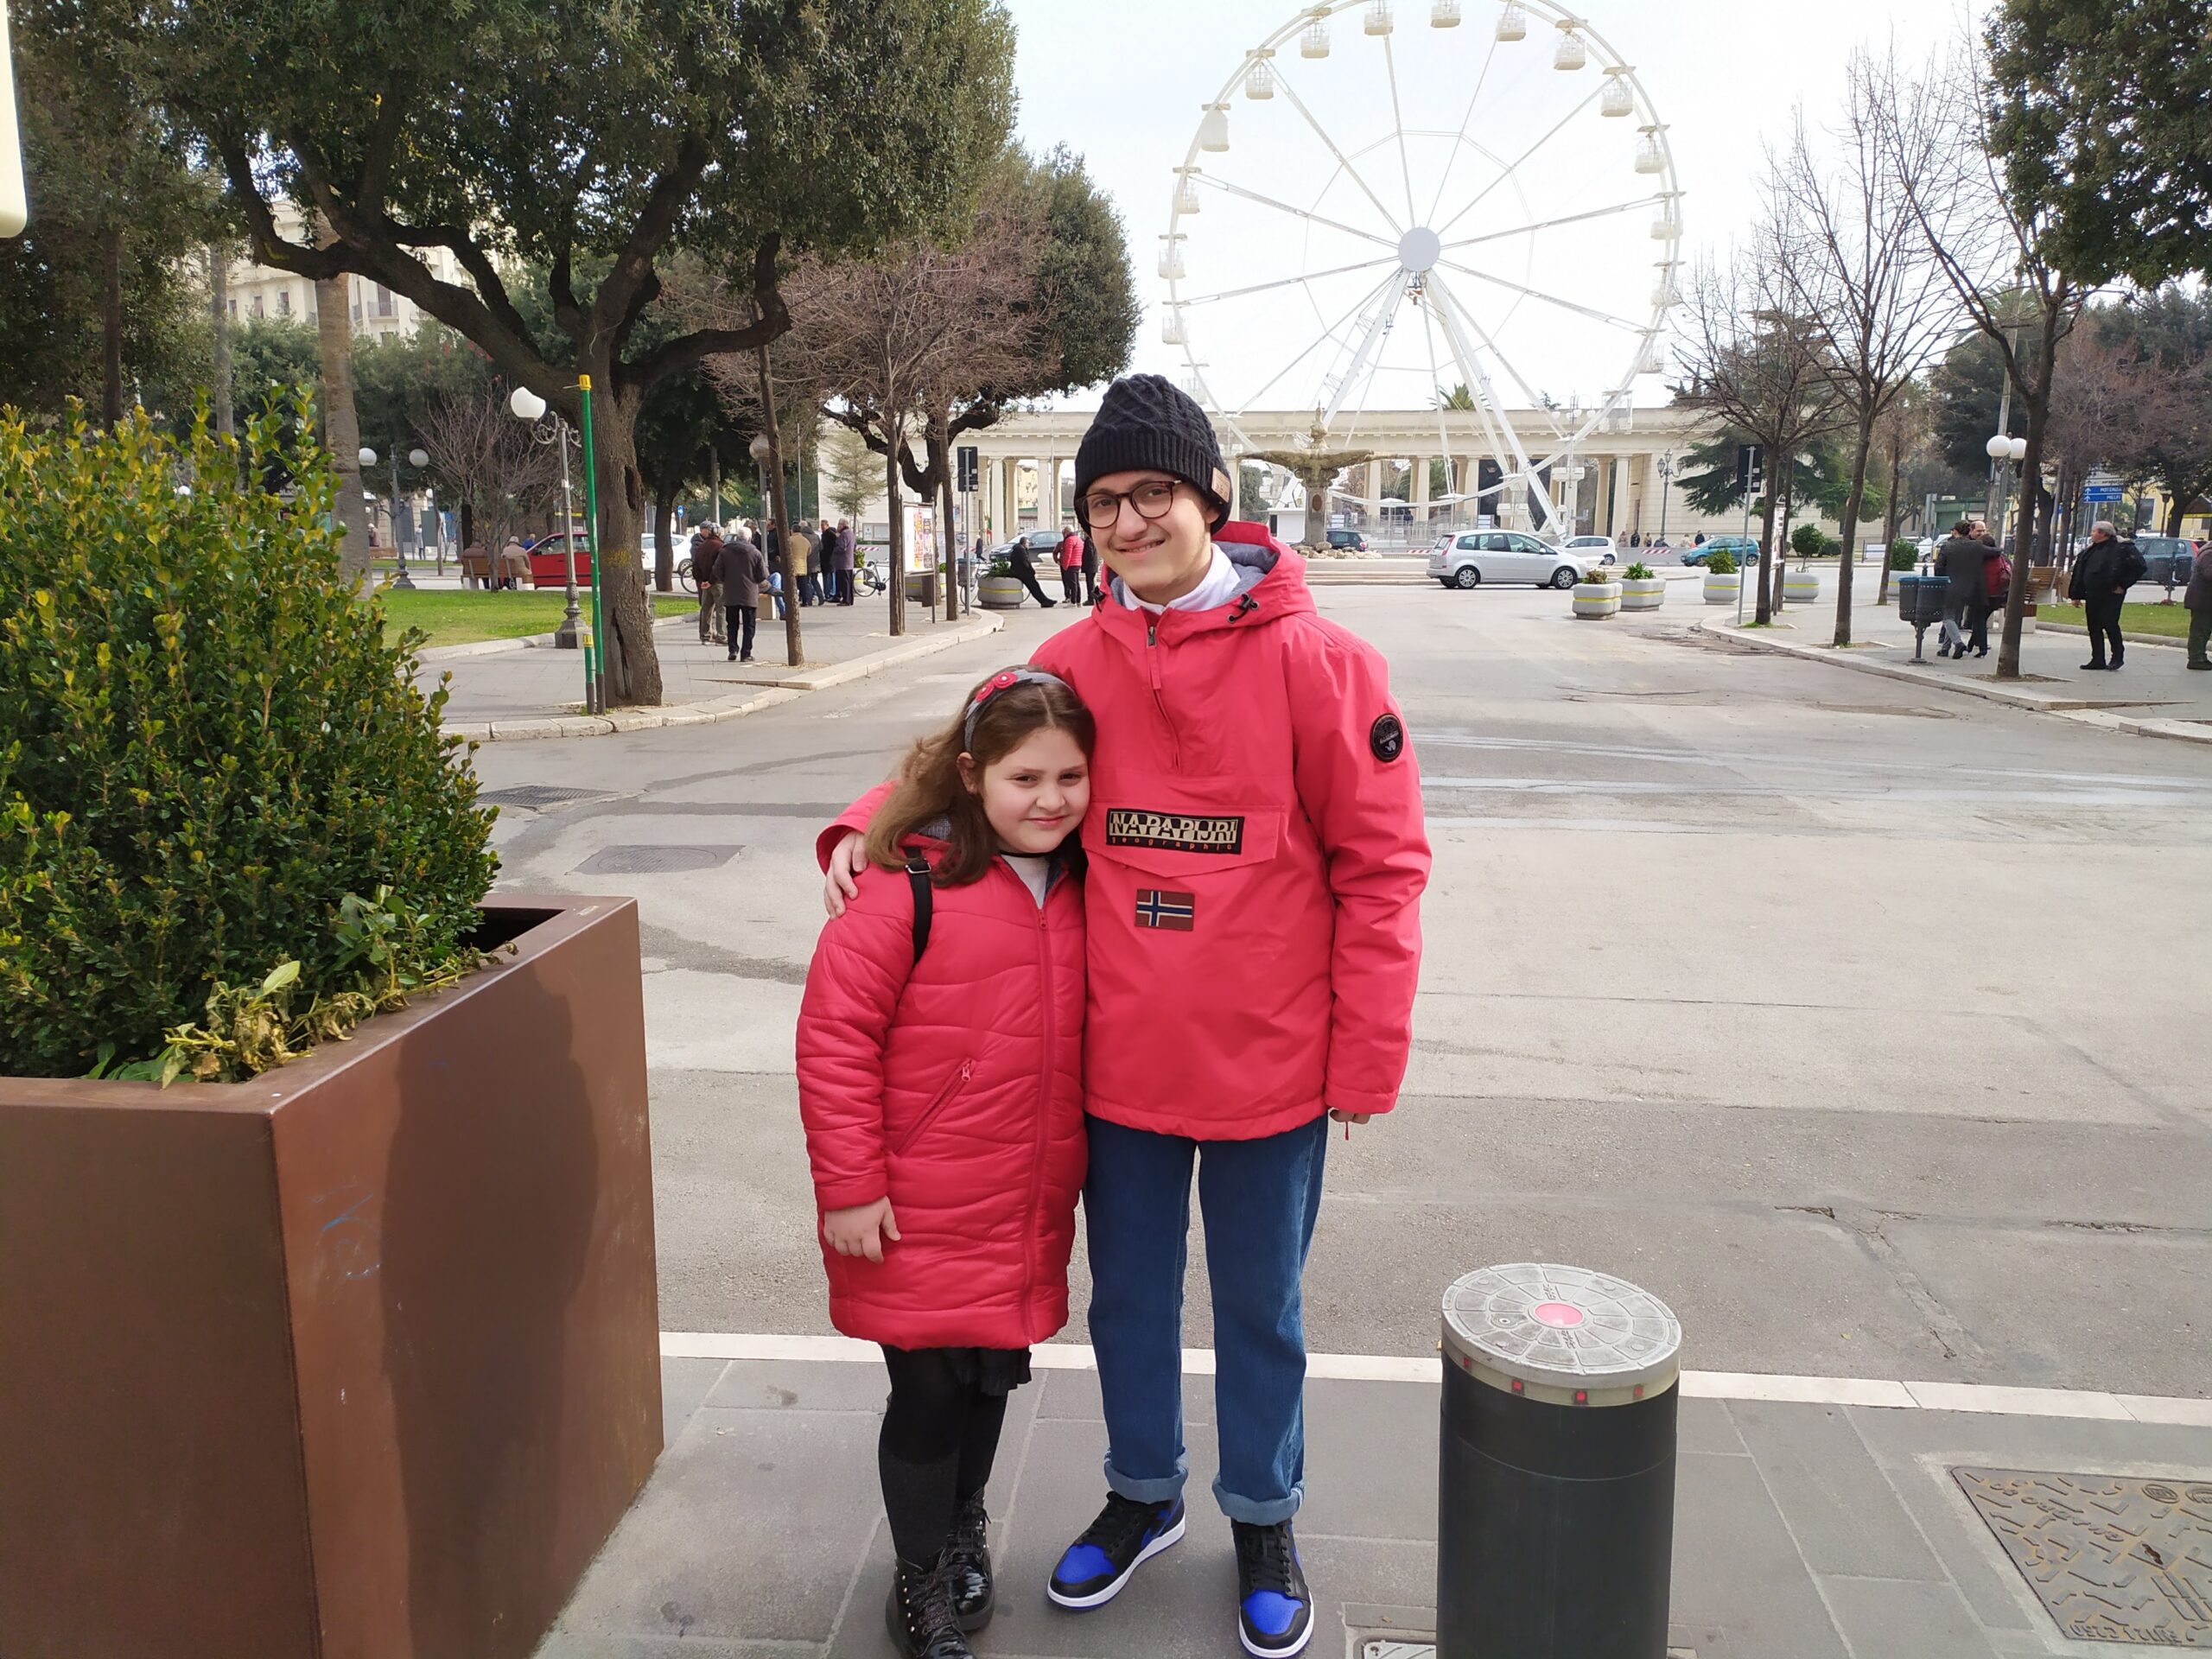 Eugenio und Francesca beim Riesenrad in Foggia